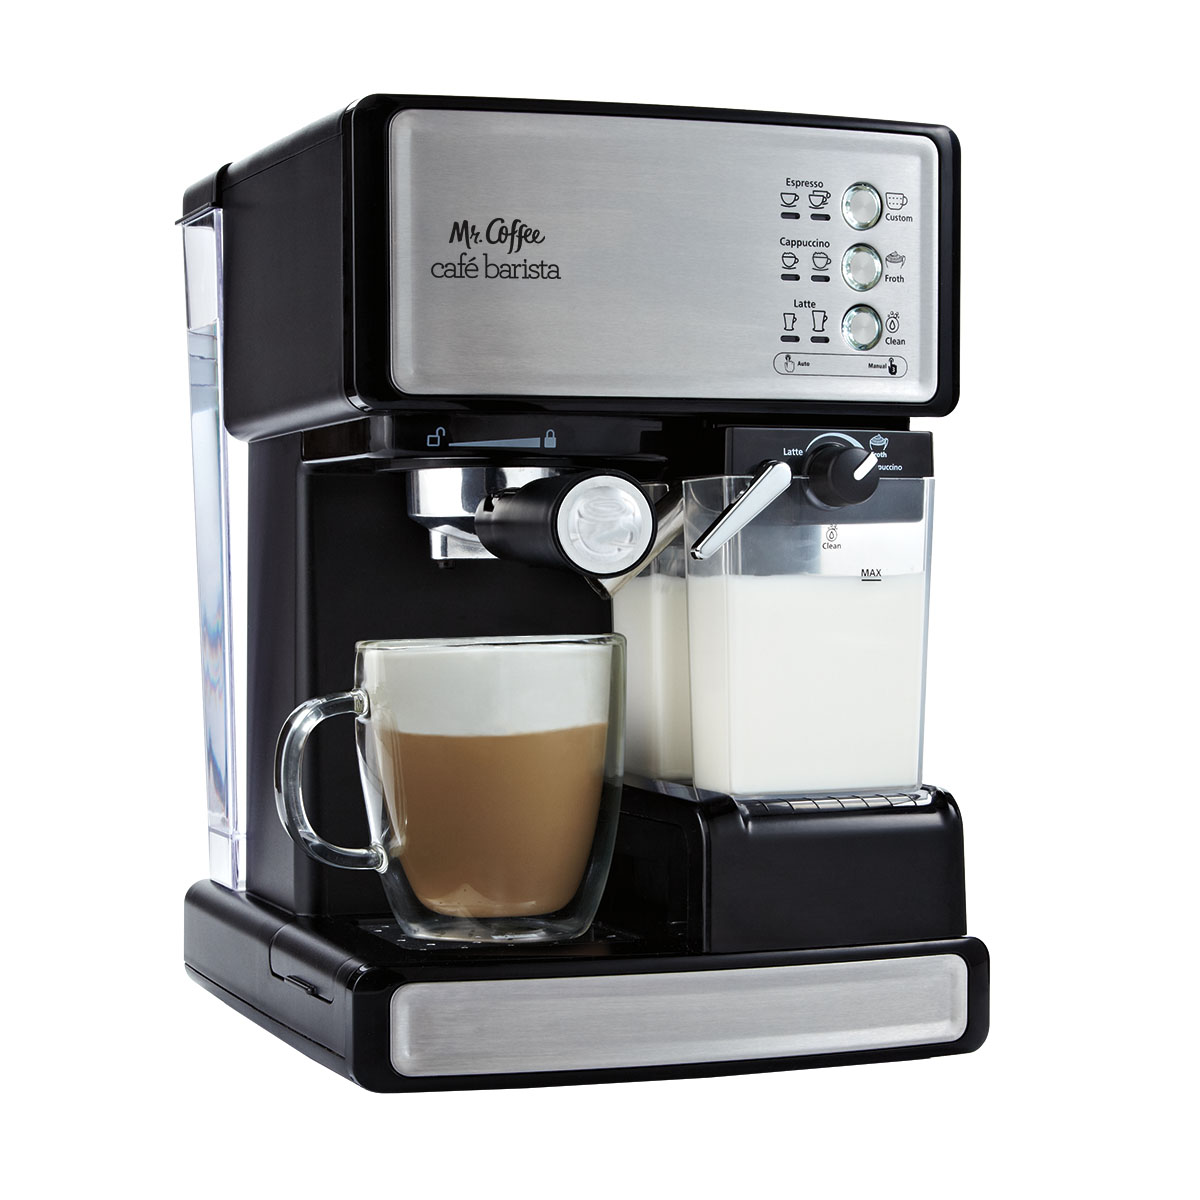 Mr. Coffee New Cafe Barista Black & Silver Premium Espresso/Latte/Cappuccino Maker - image 1 of 11